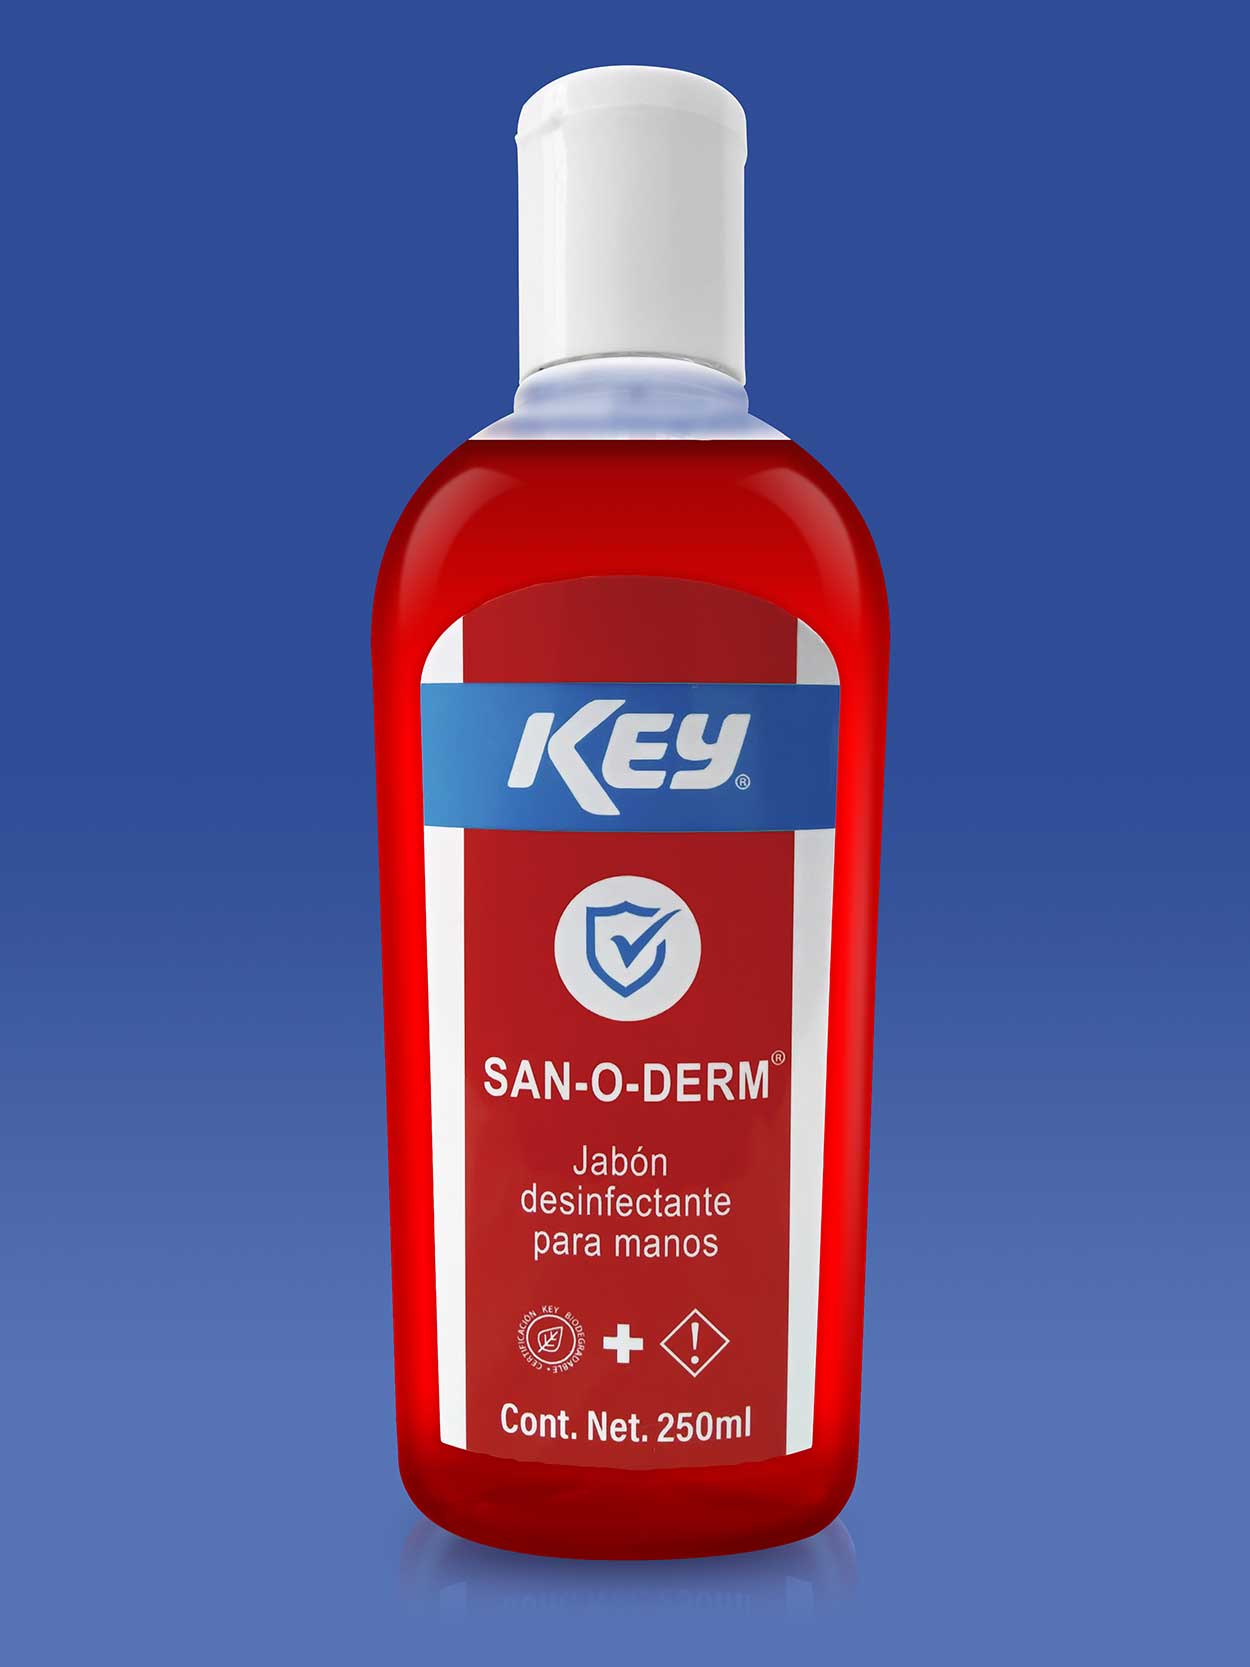 KEY SAN-O-DERM 250 ml